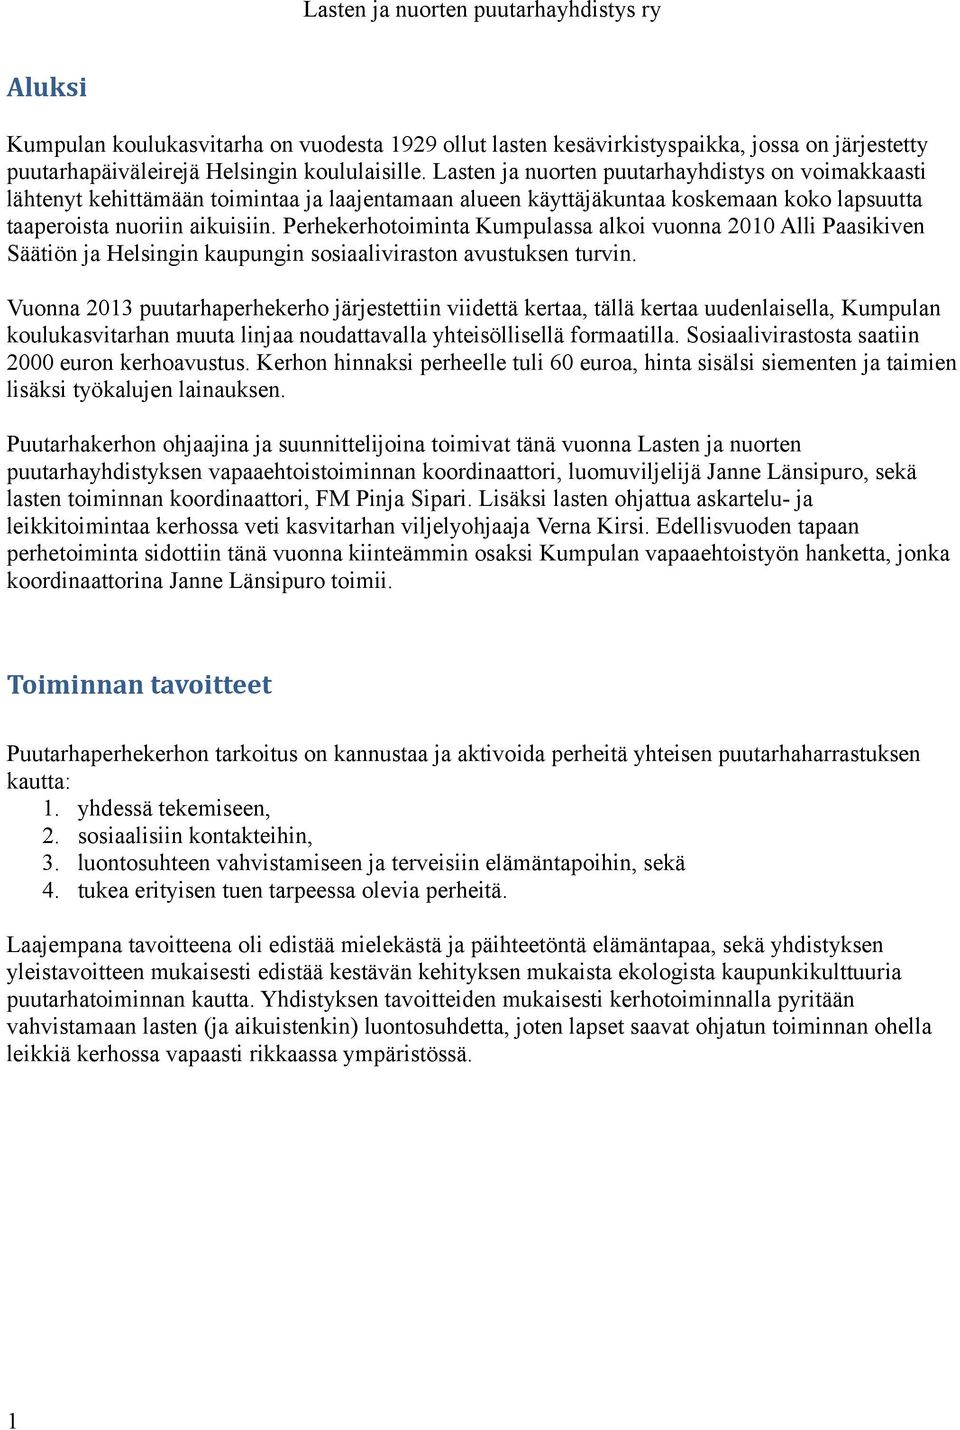 Perhekerhotoiminta Kumpulassa alkoi vuonna 2010 Alli Paasikiven Säätiön ja Helsingin kaupungin sosiaaliviraston avustuksen turvin.